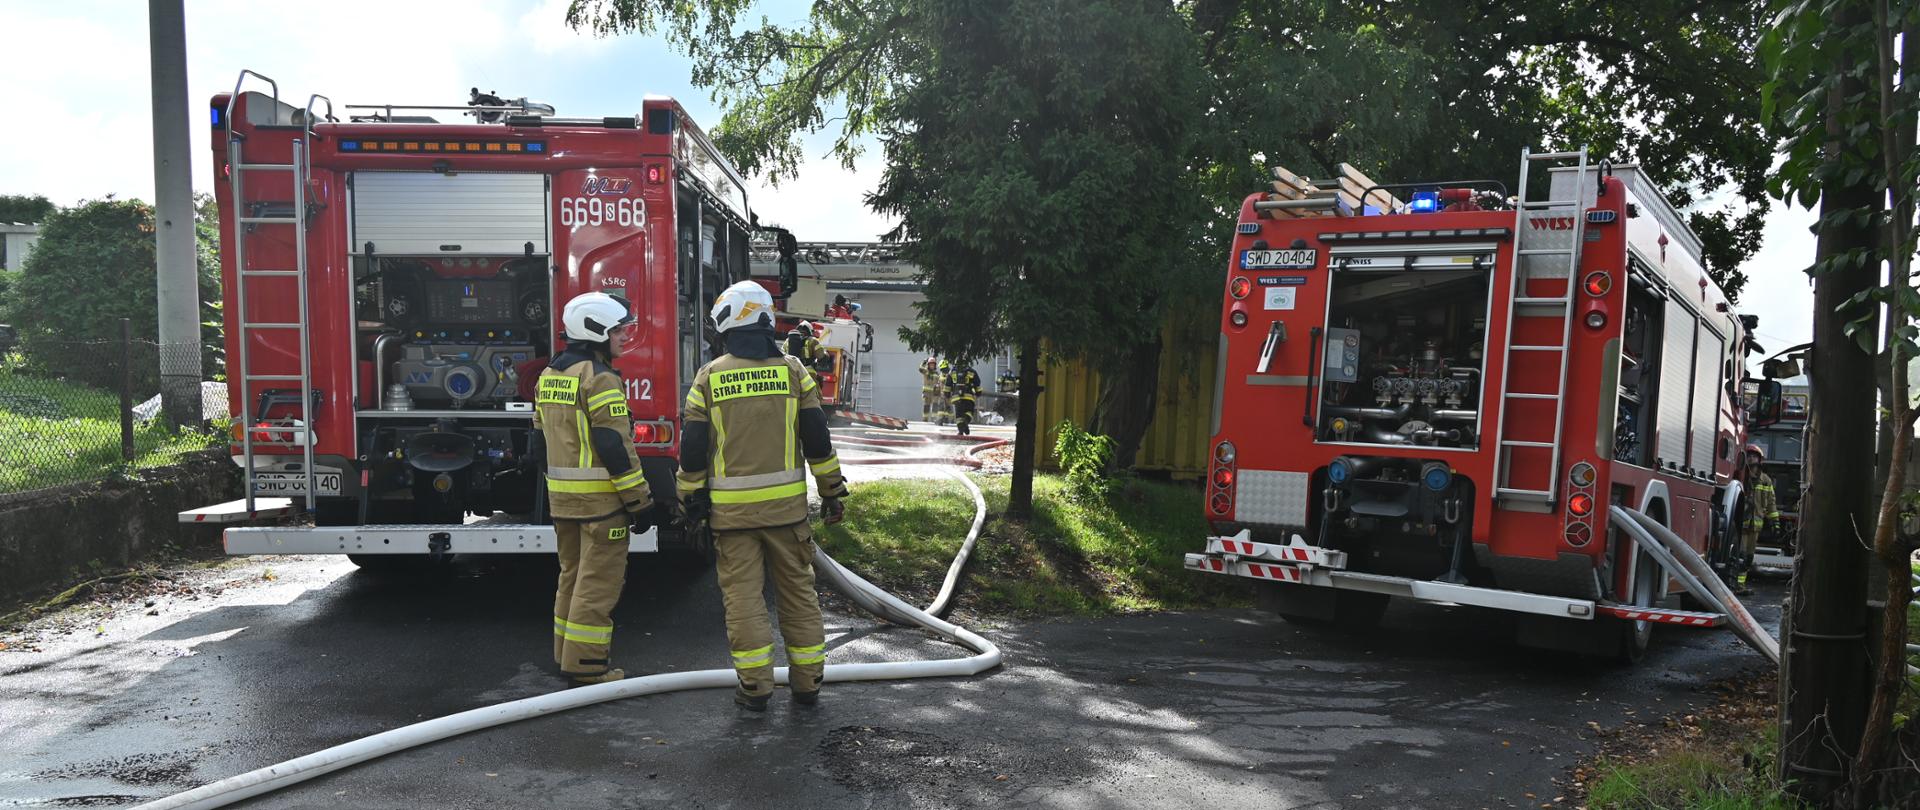 Strażacy obsługują autopompy na samochodach pożarniczych podczas pożaru